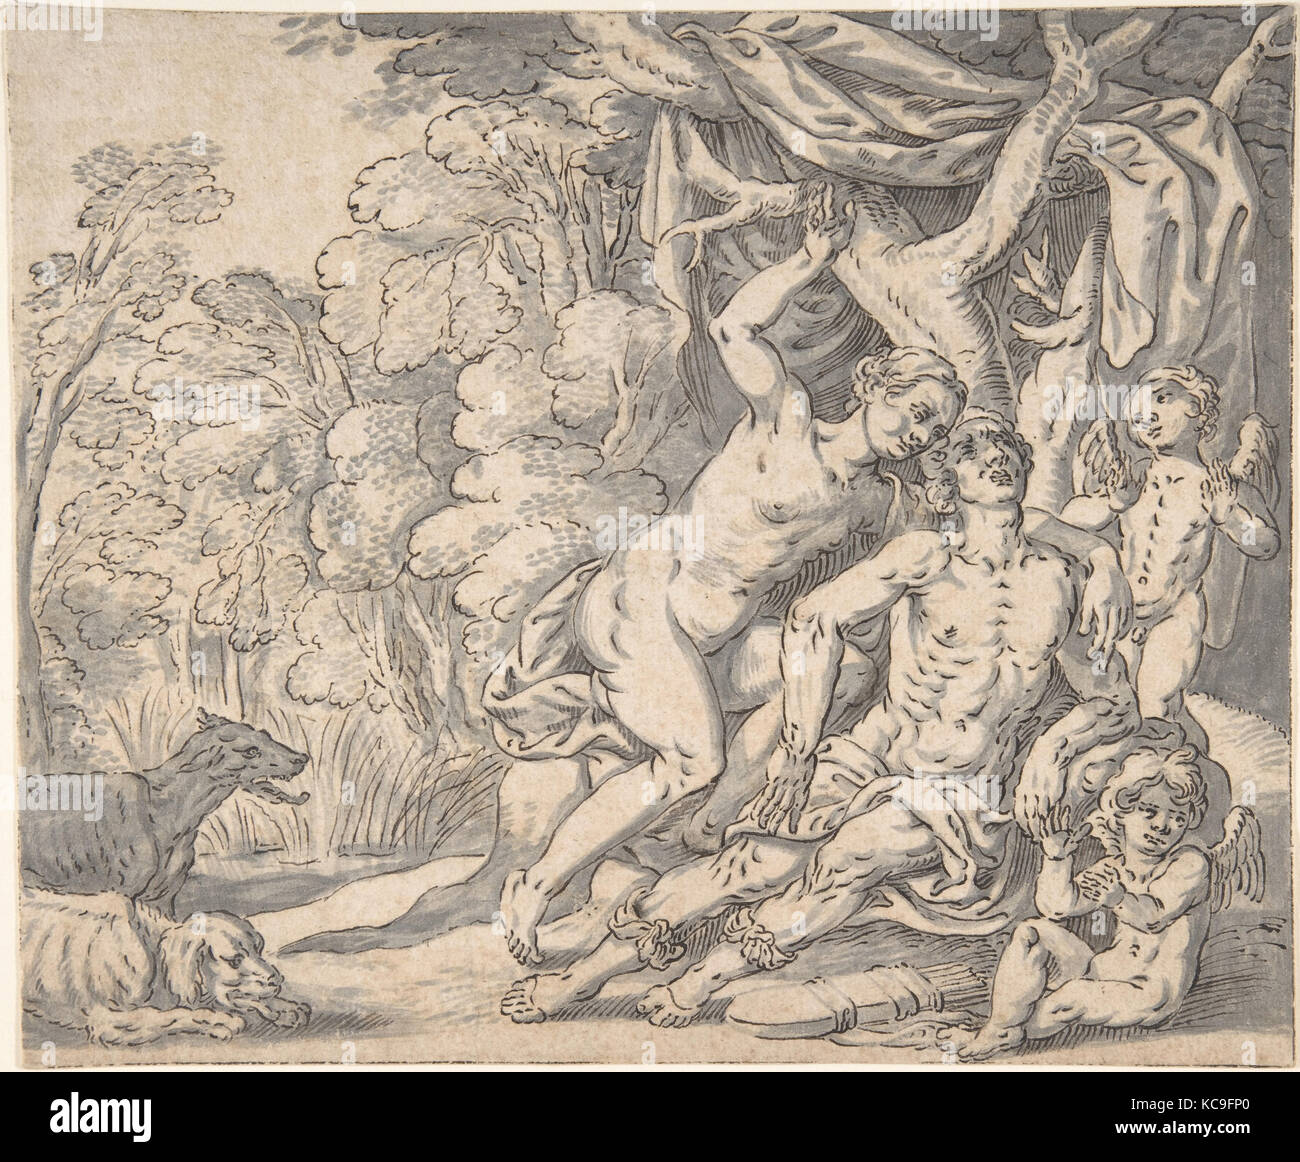 La mort d'Adonis, ca. 1625, plume et encre noire, brosse et gray de lavage. Ligne d'encadrement à la plume et encre noire., feuille : 7 1/2 x 9 in Banque D'Images